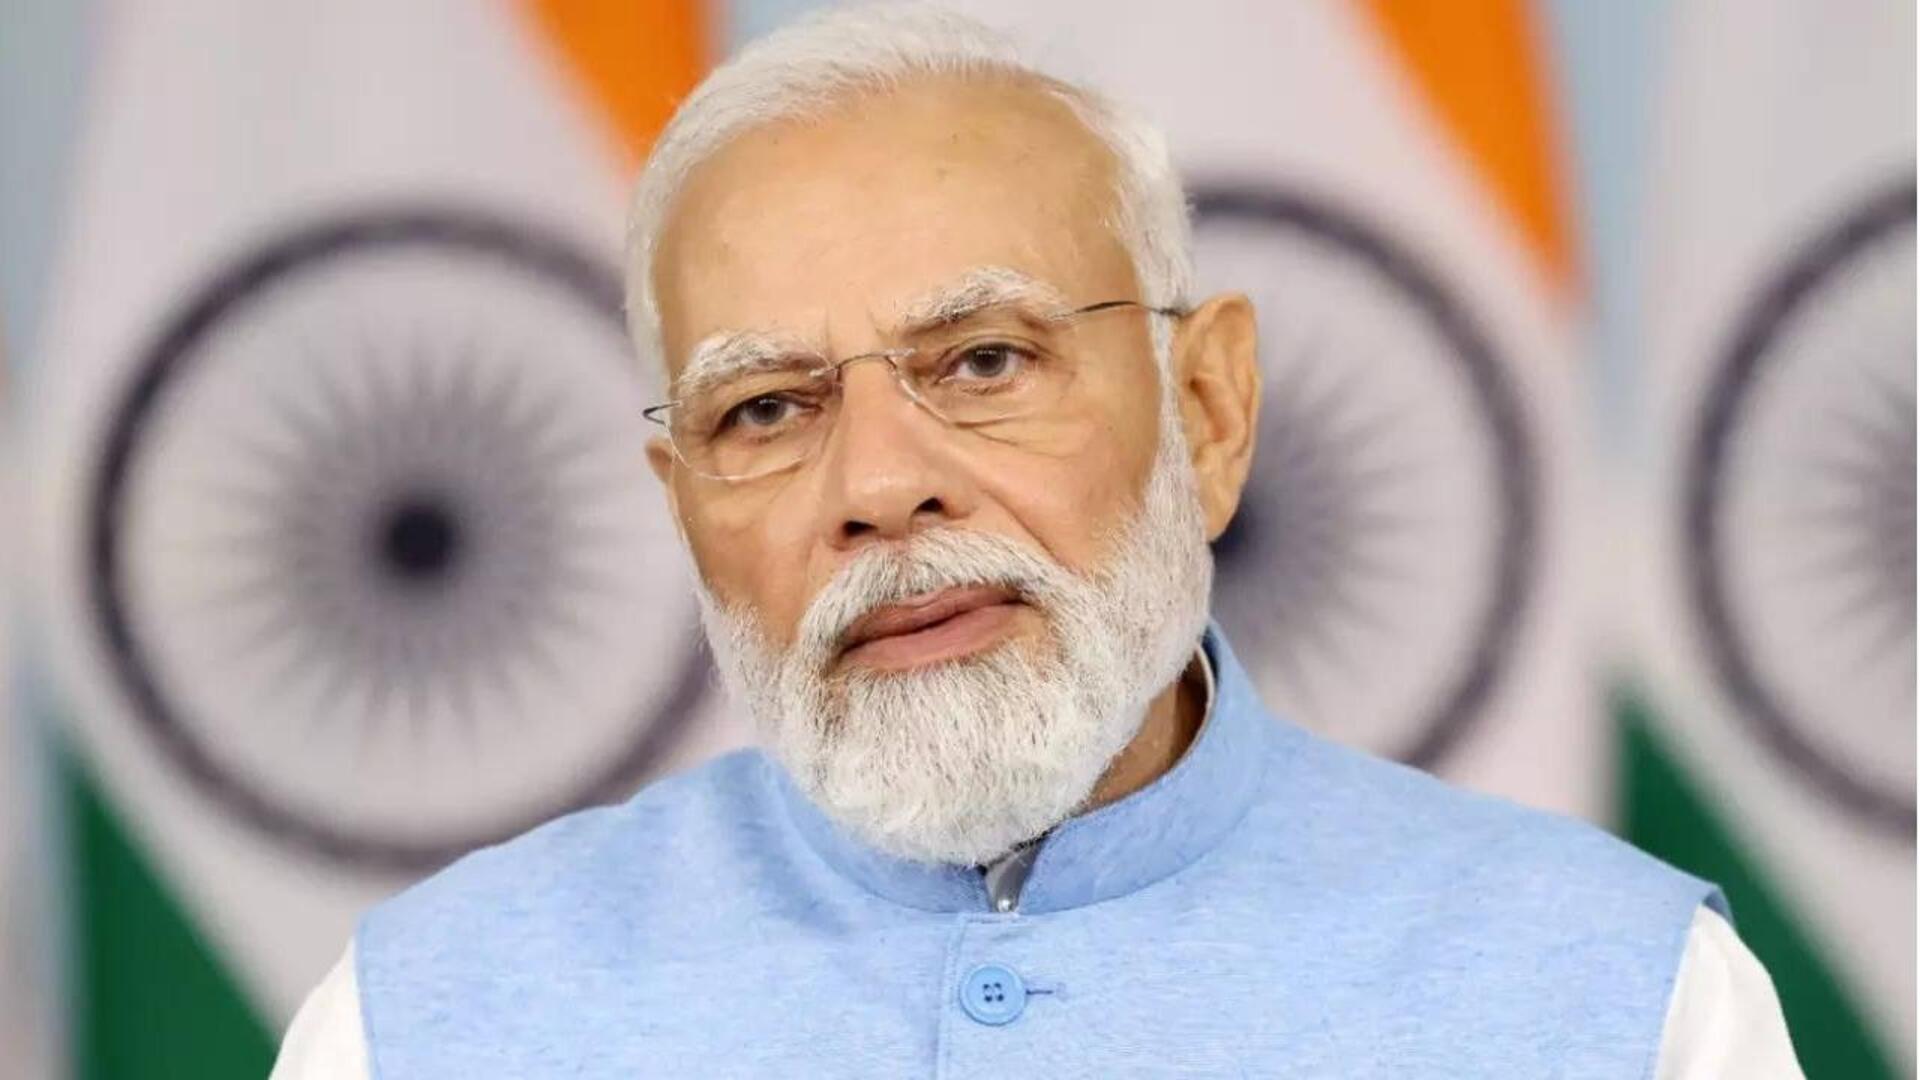 'Deepfake problematic': PM Modi raises concerns over misuse of AI